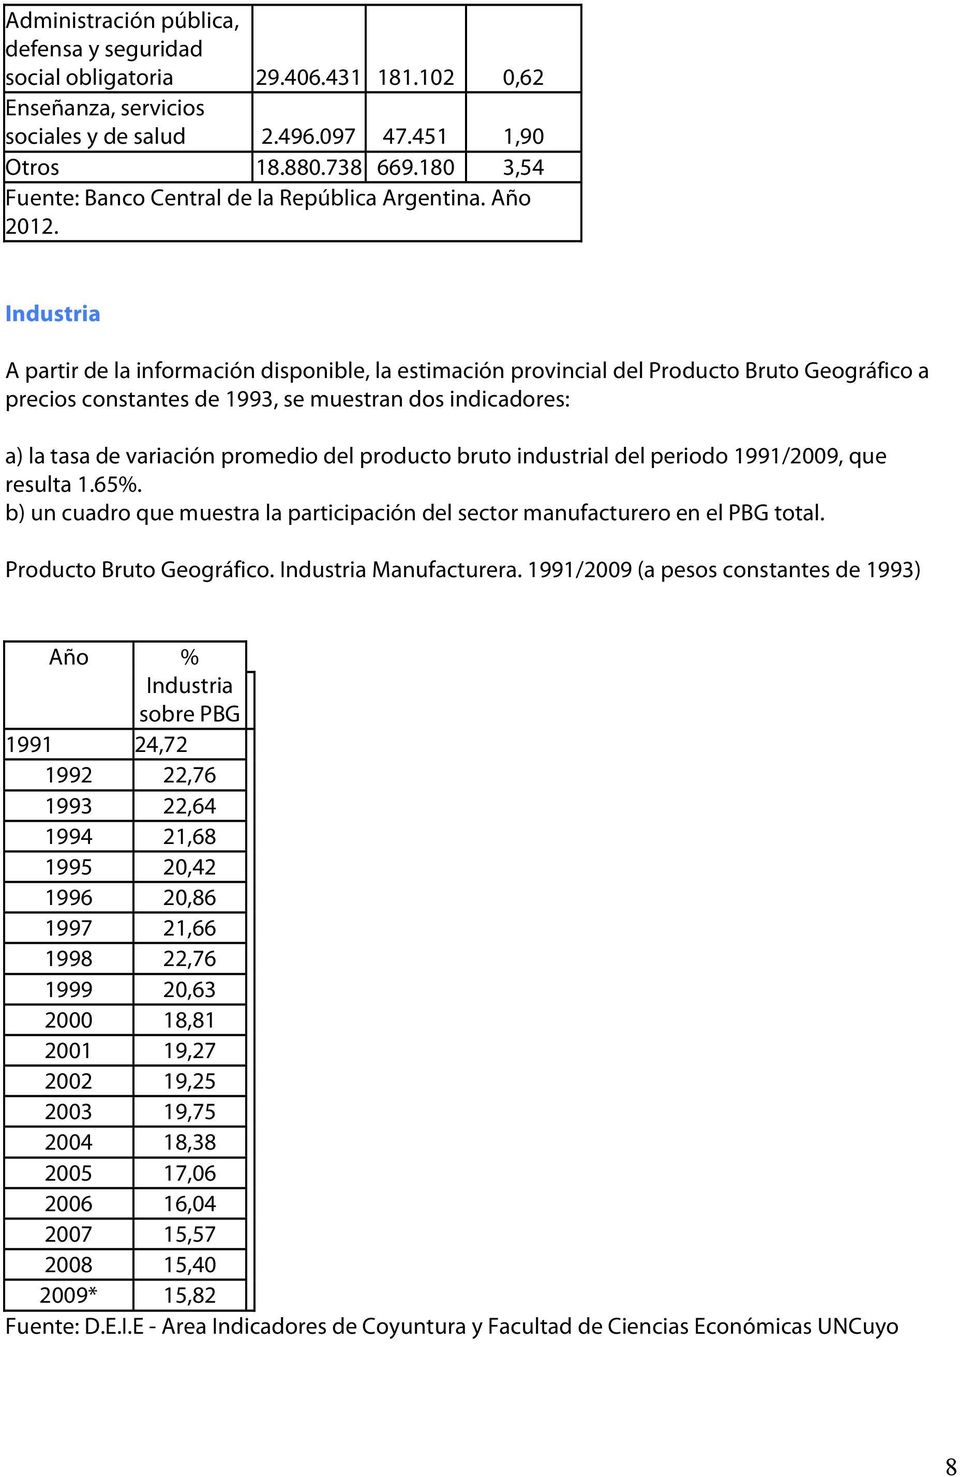 Industria A partir de la información disponible, la estimación provincial del Producto Bruto Geográfico a precios constantes de 1993, se muestran dos indicadores: a) la tasa de variación promedio del